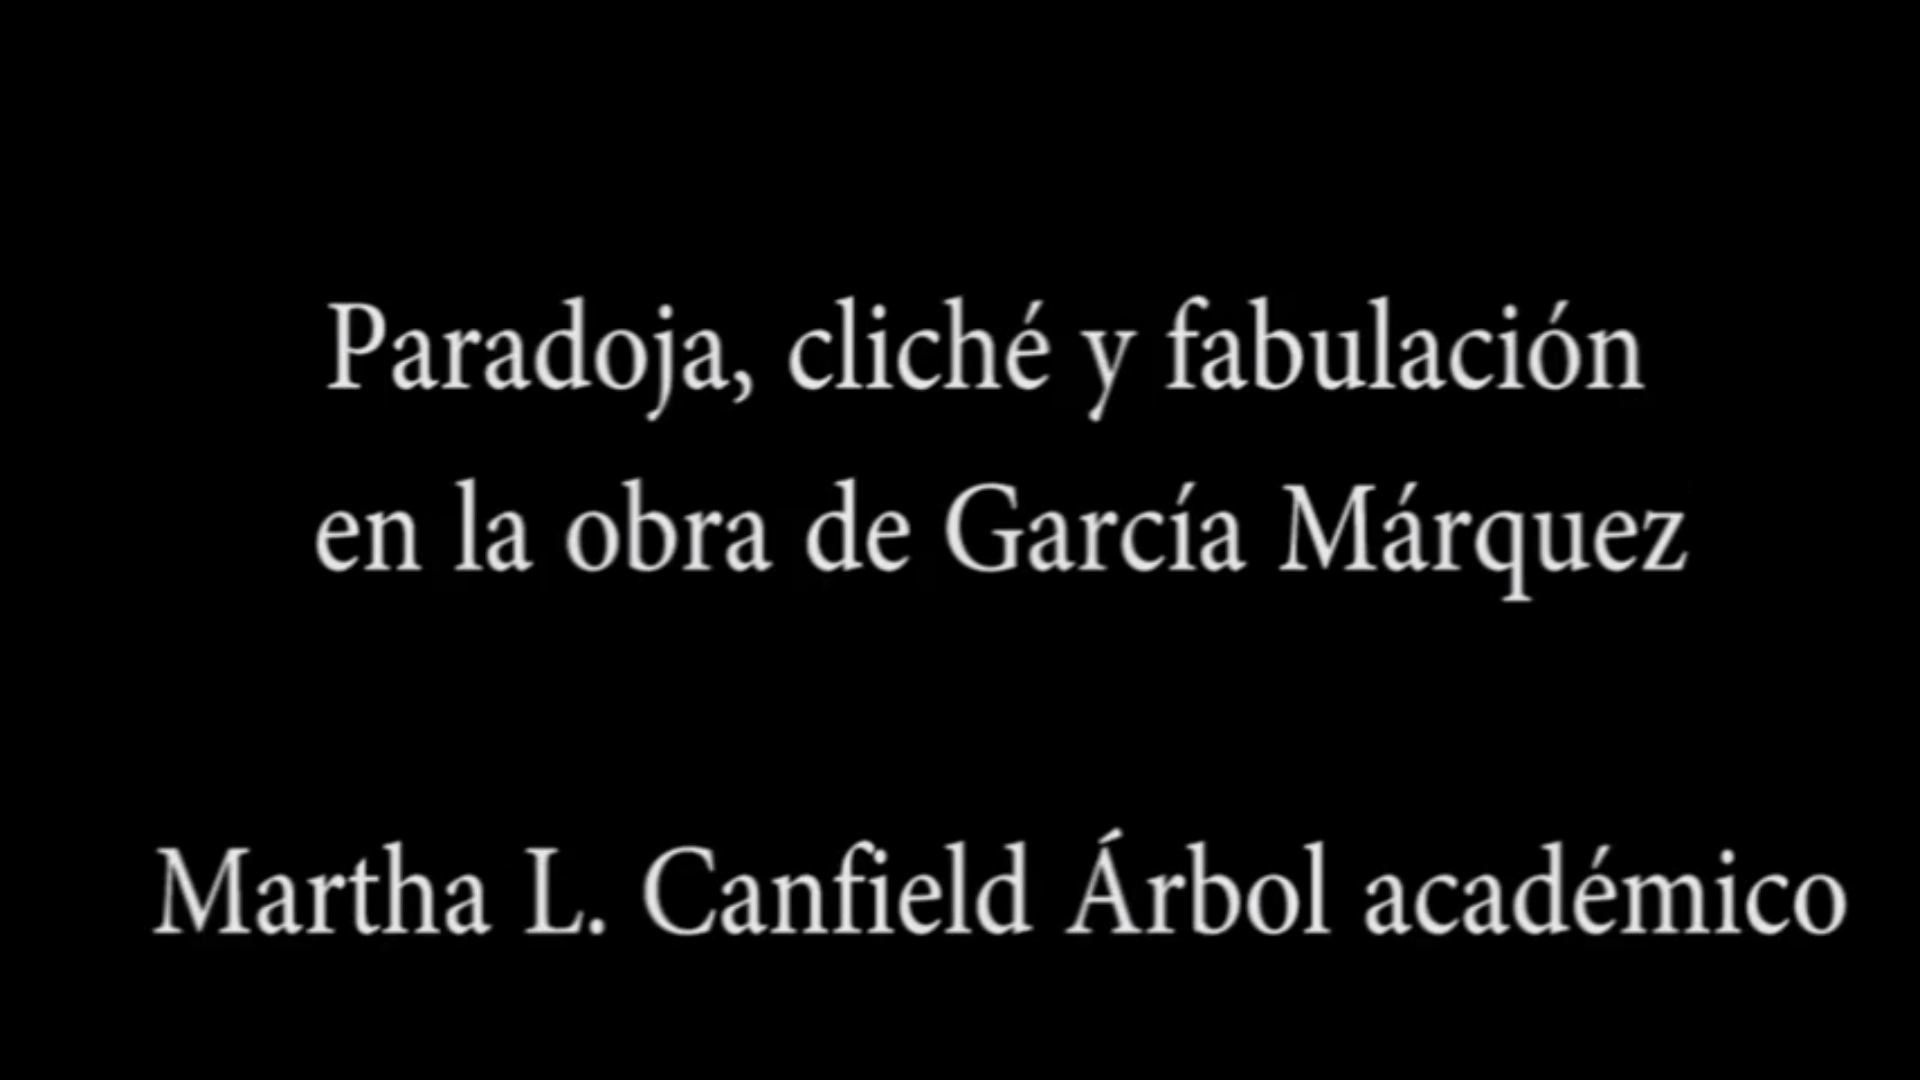 Paradoja, cliché y fabulación en la obra de García Márquez